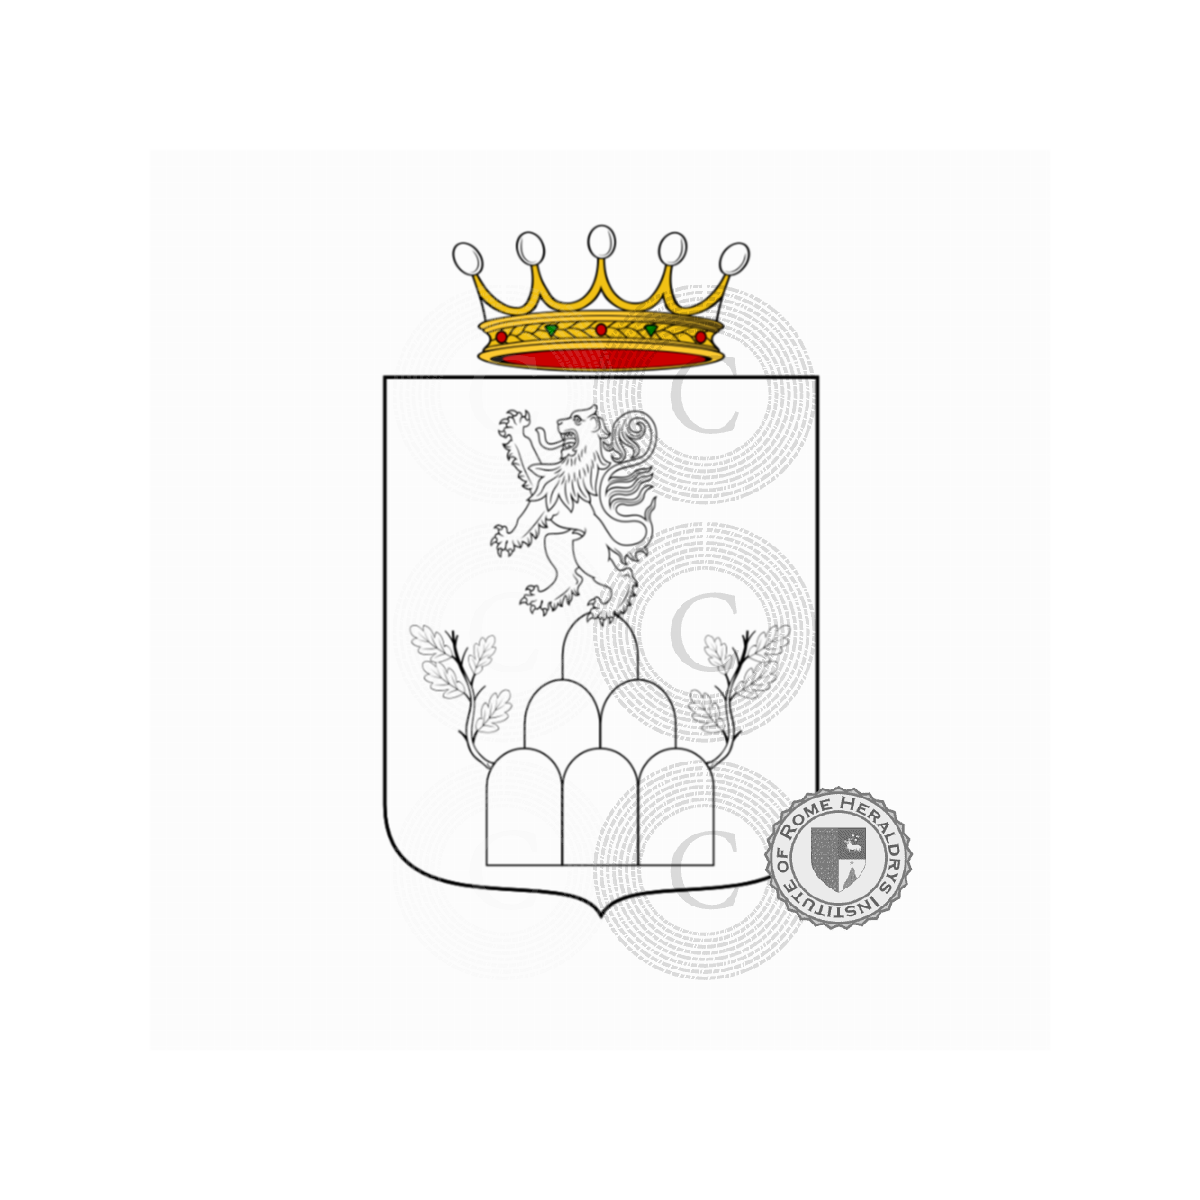 Escudo de la familiaBarletti, Barlet,Barlettai,Barletti,Barletto